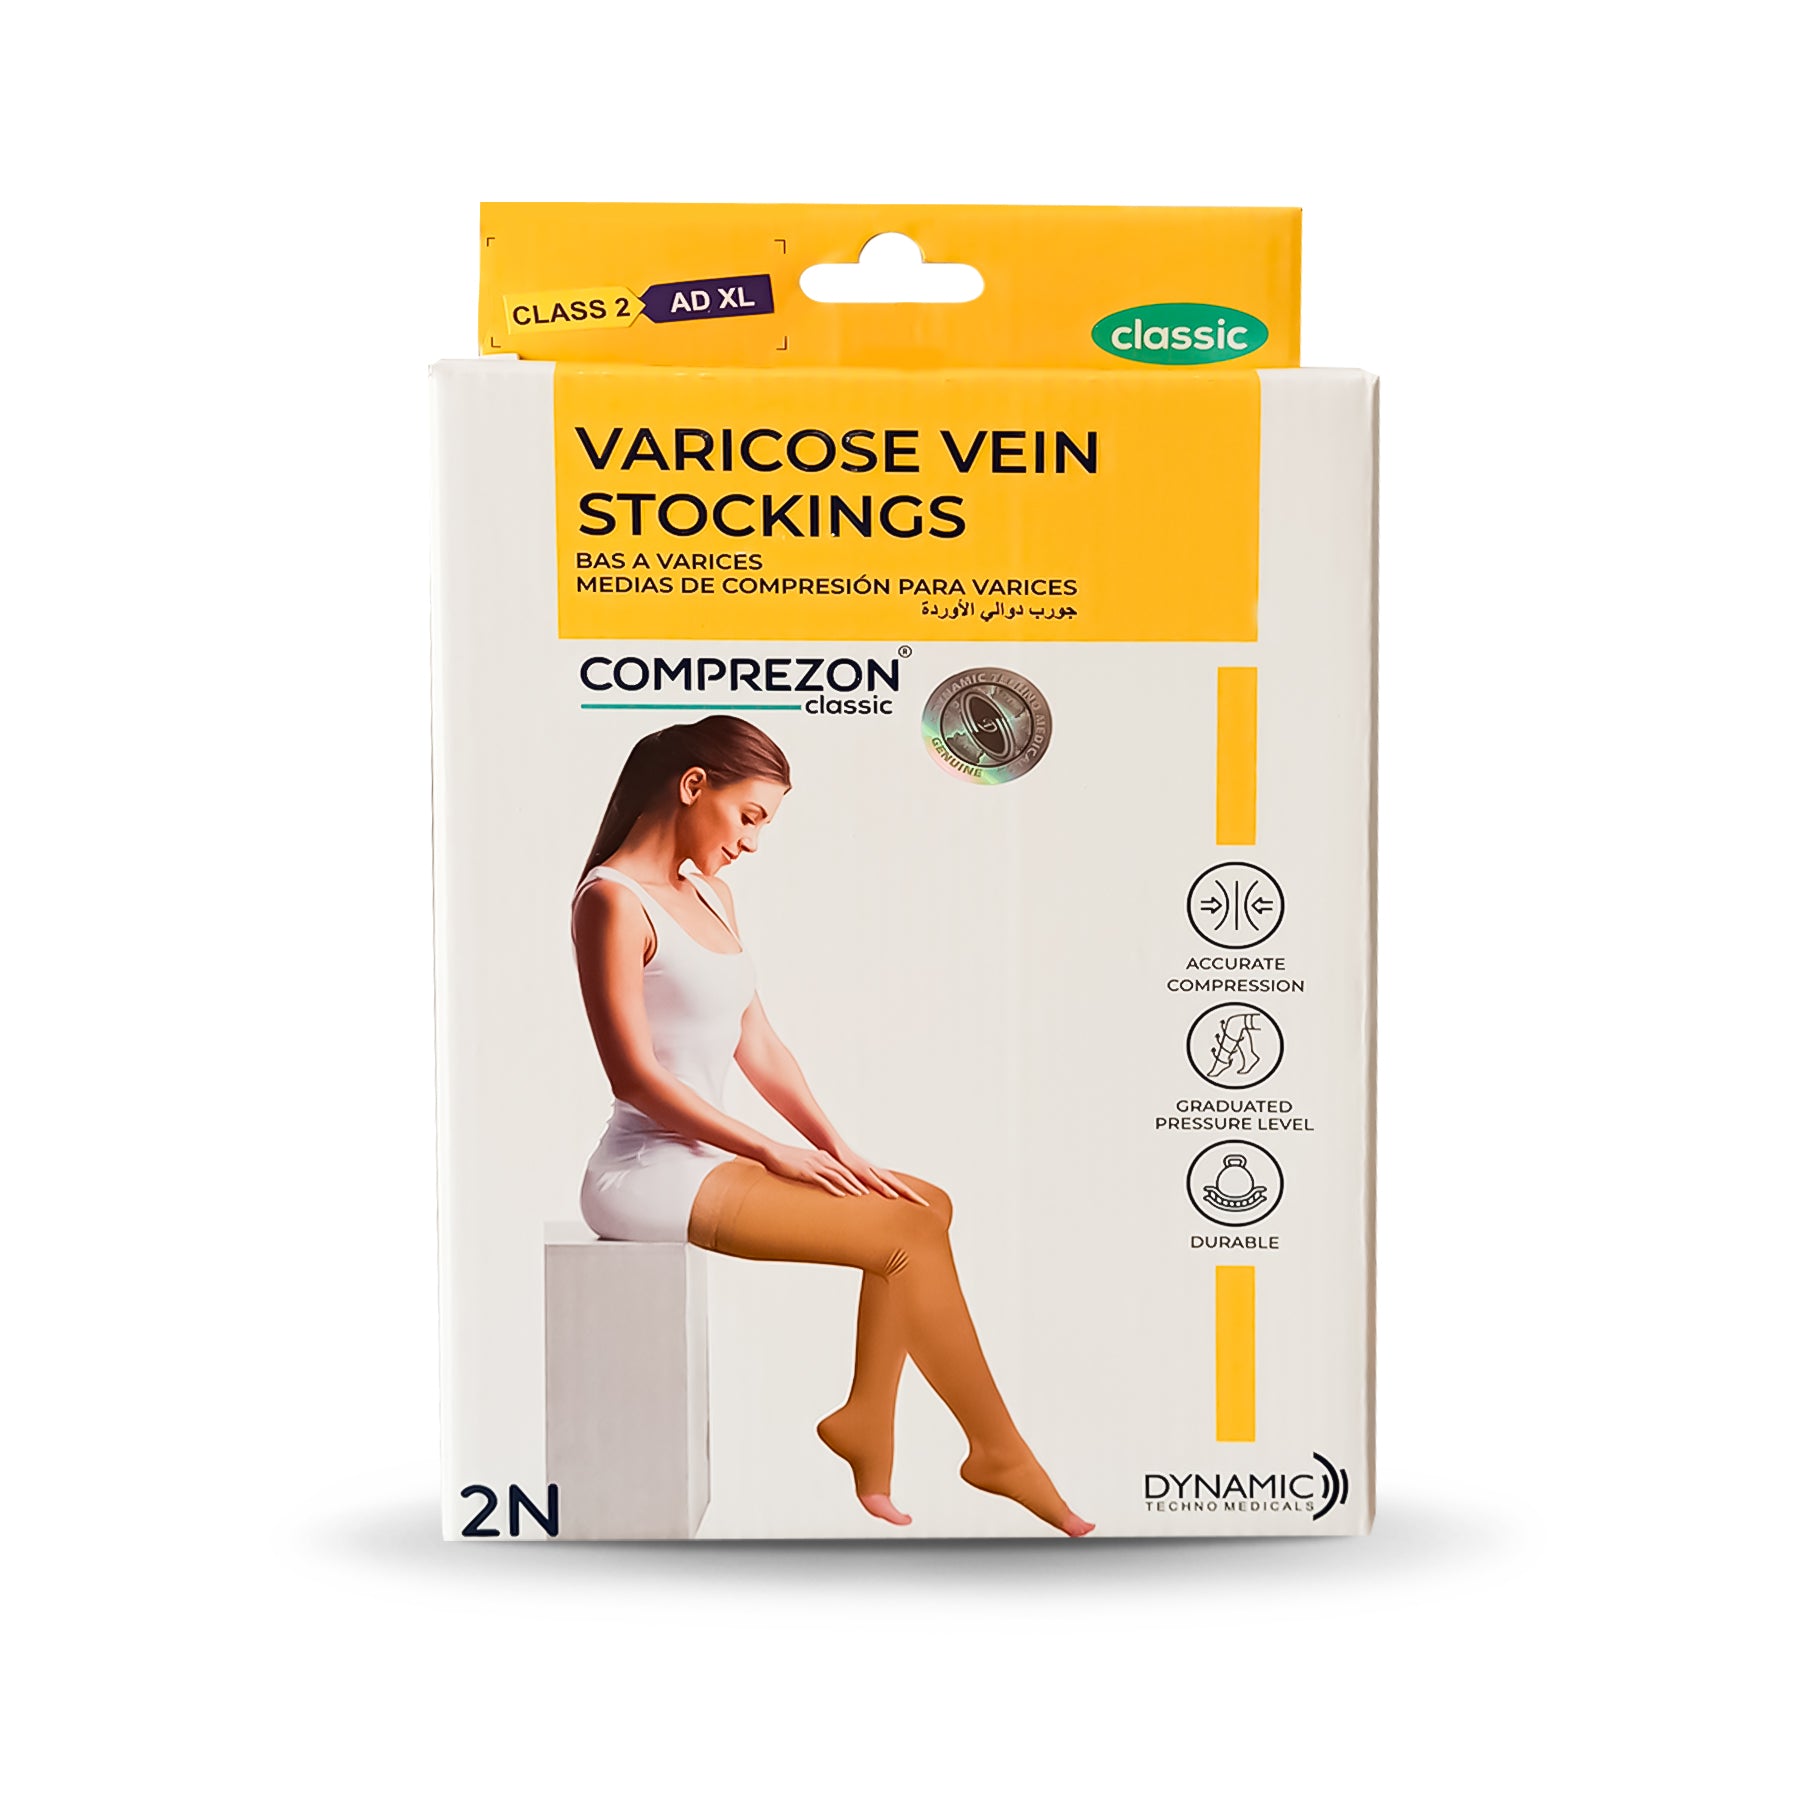 Buy Comprezon Varicose Vein Stockings Class 1- Below Knee - 1 Pair